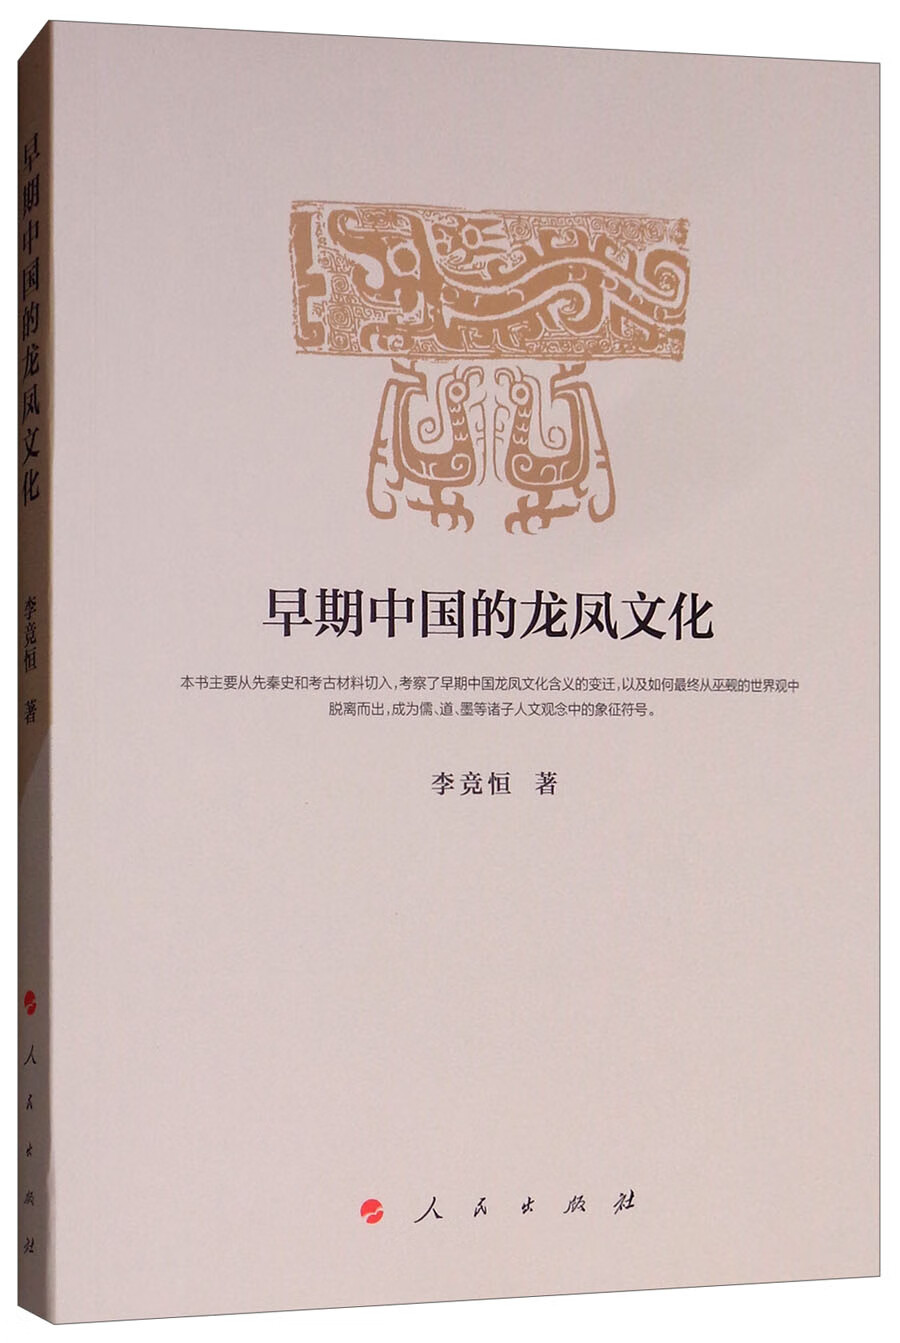 早期中国的龙凤文化 azw3格式下载